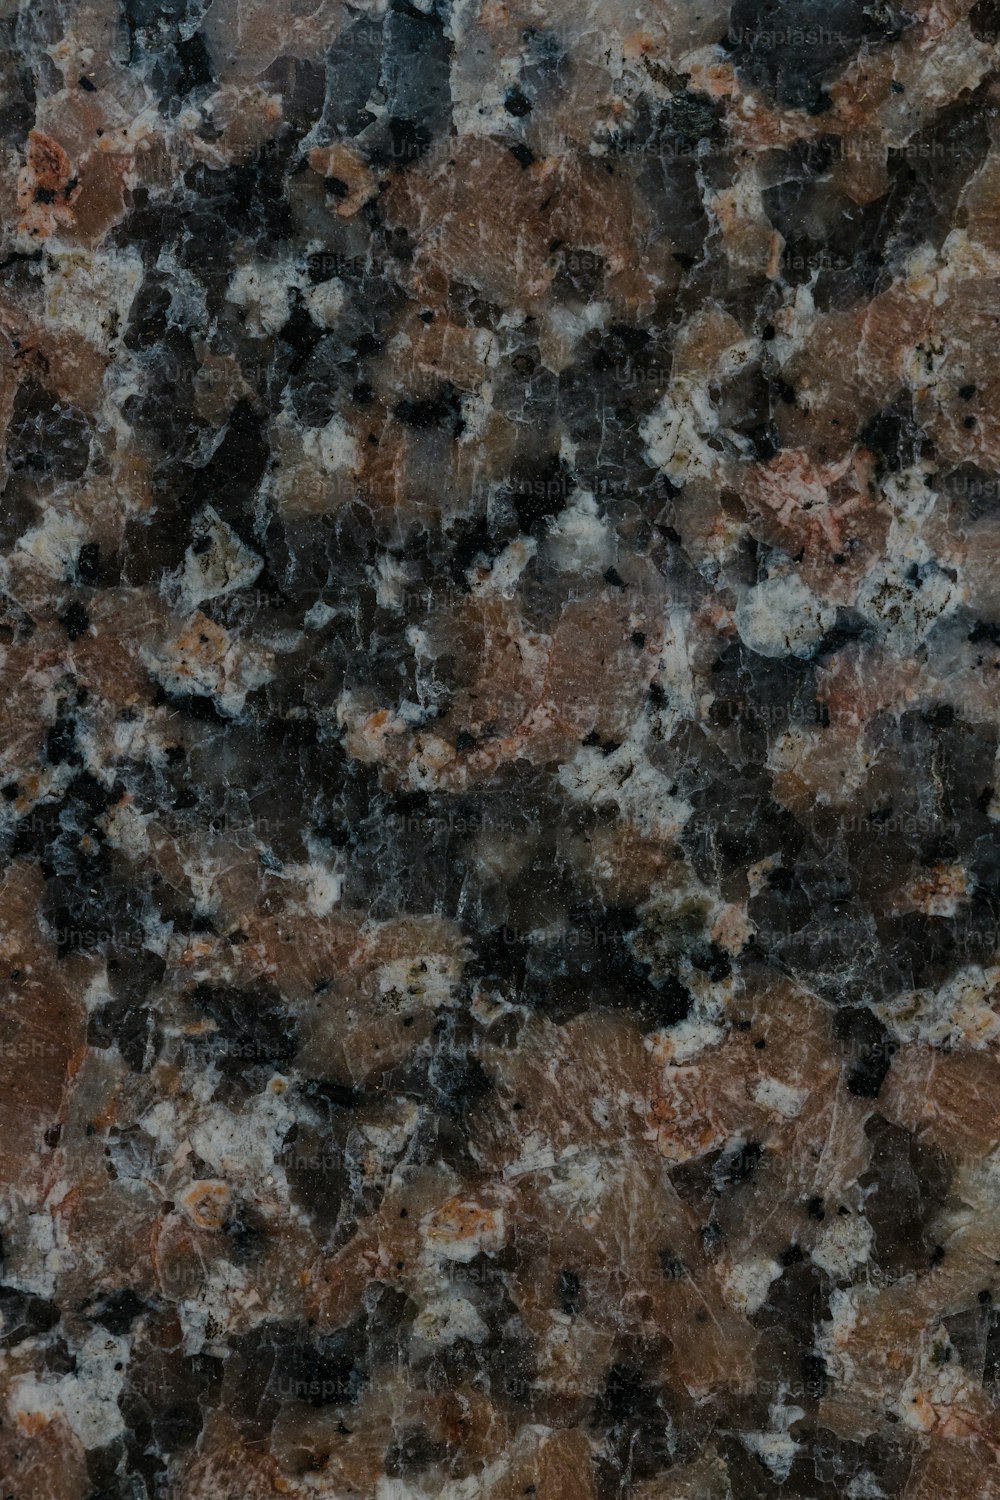 Un primo piano di una superficie di marmo che sembra granito